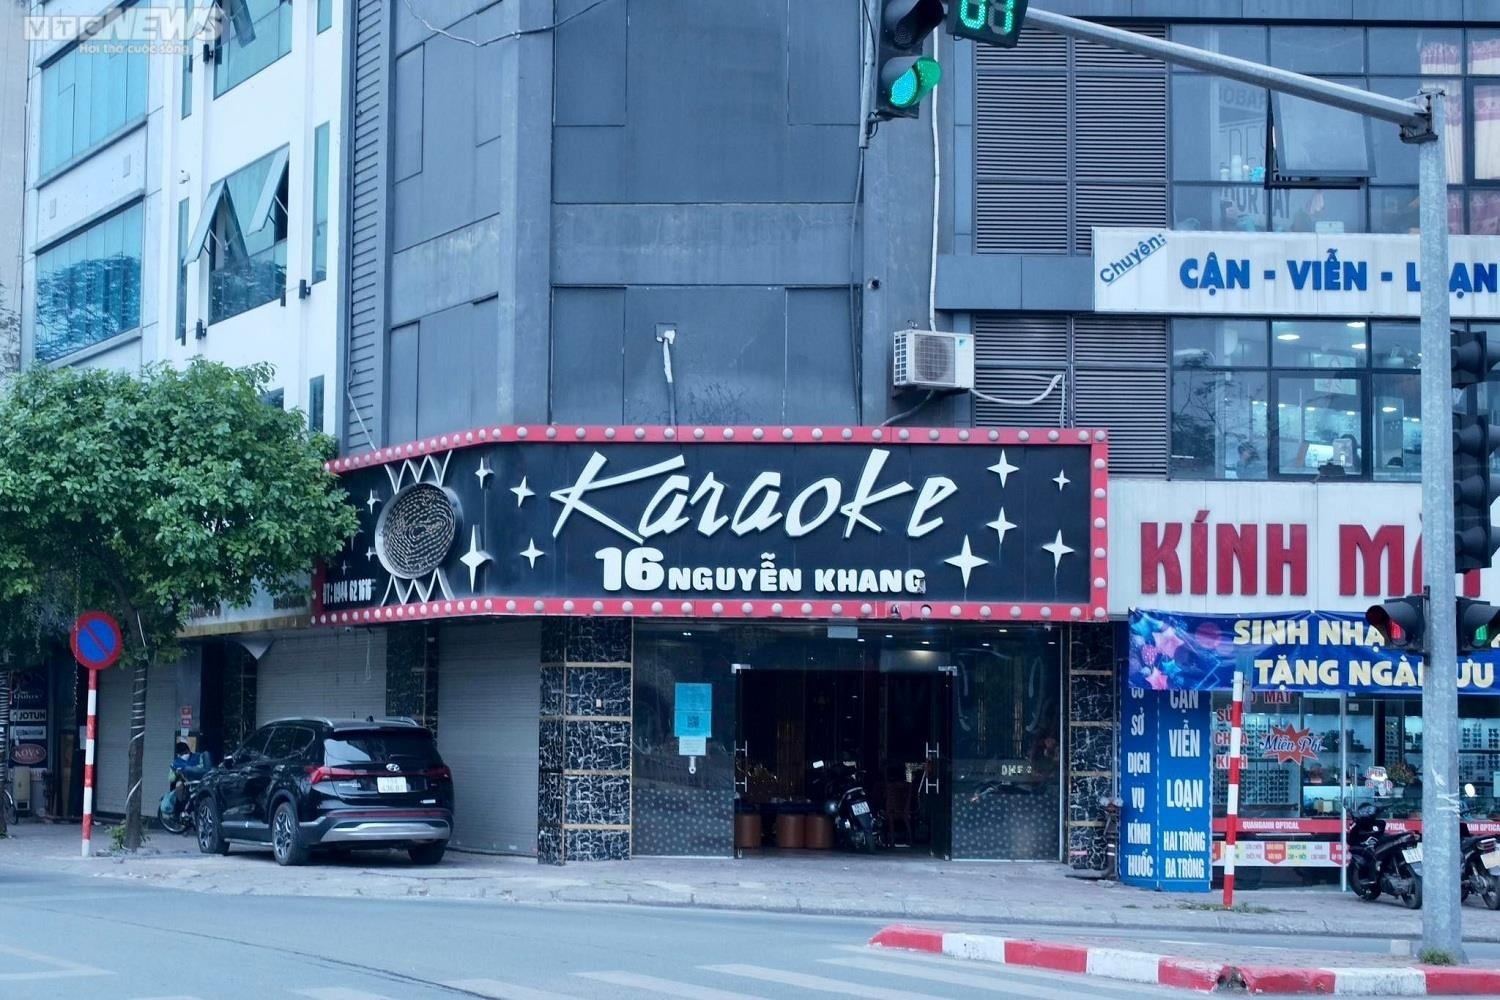 Chủ quán karaoke Hà Nội tán gia bại sản, bán bia mưu sinh - 1